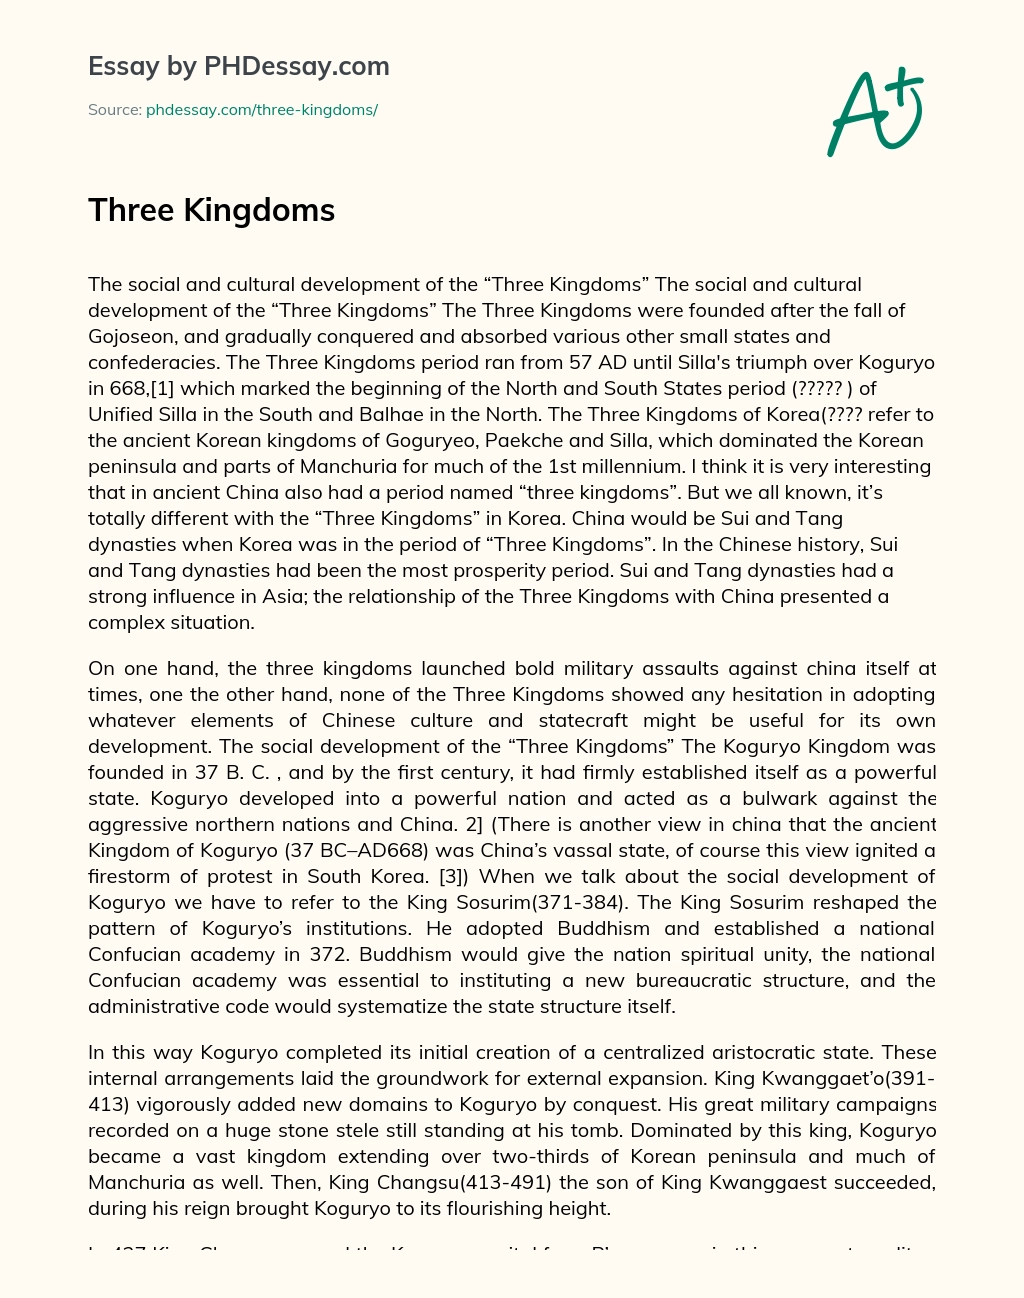 Three Kingdoms essay